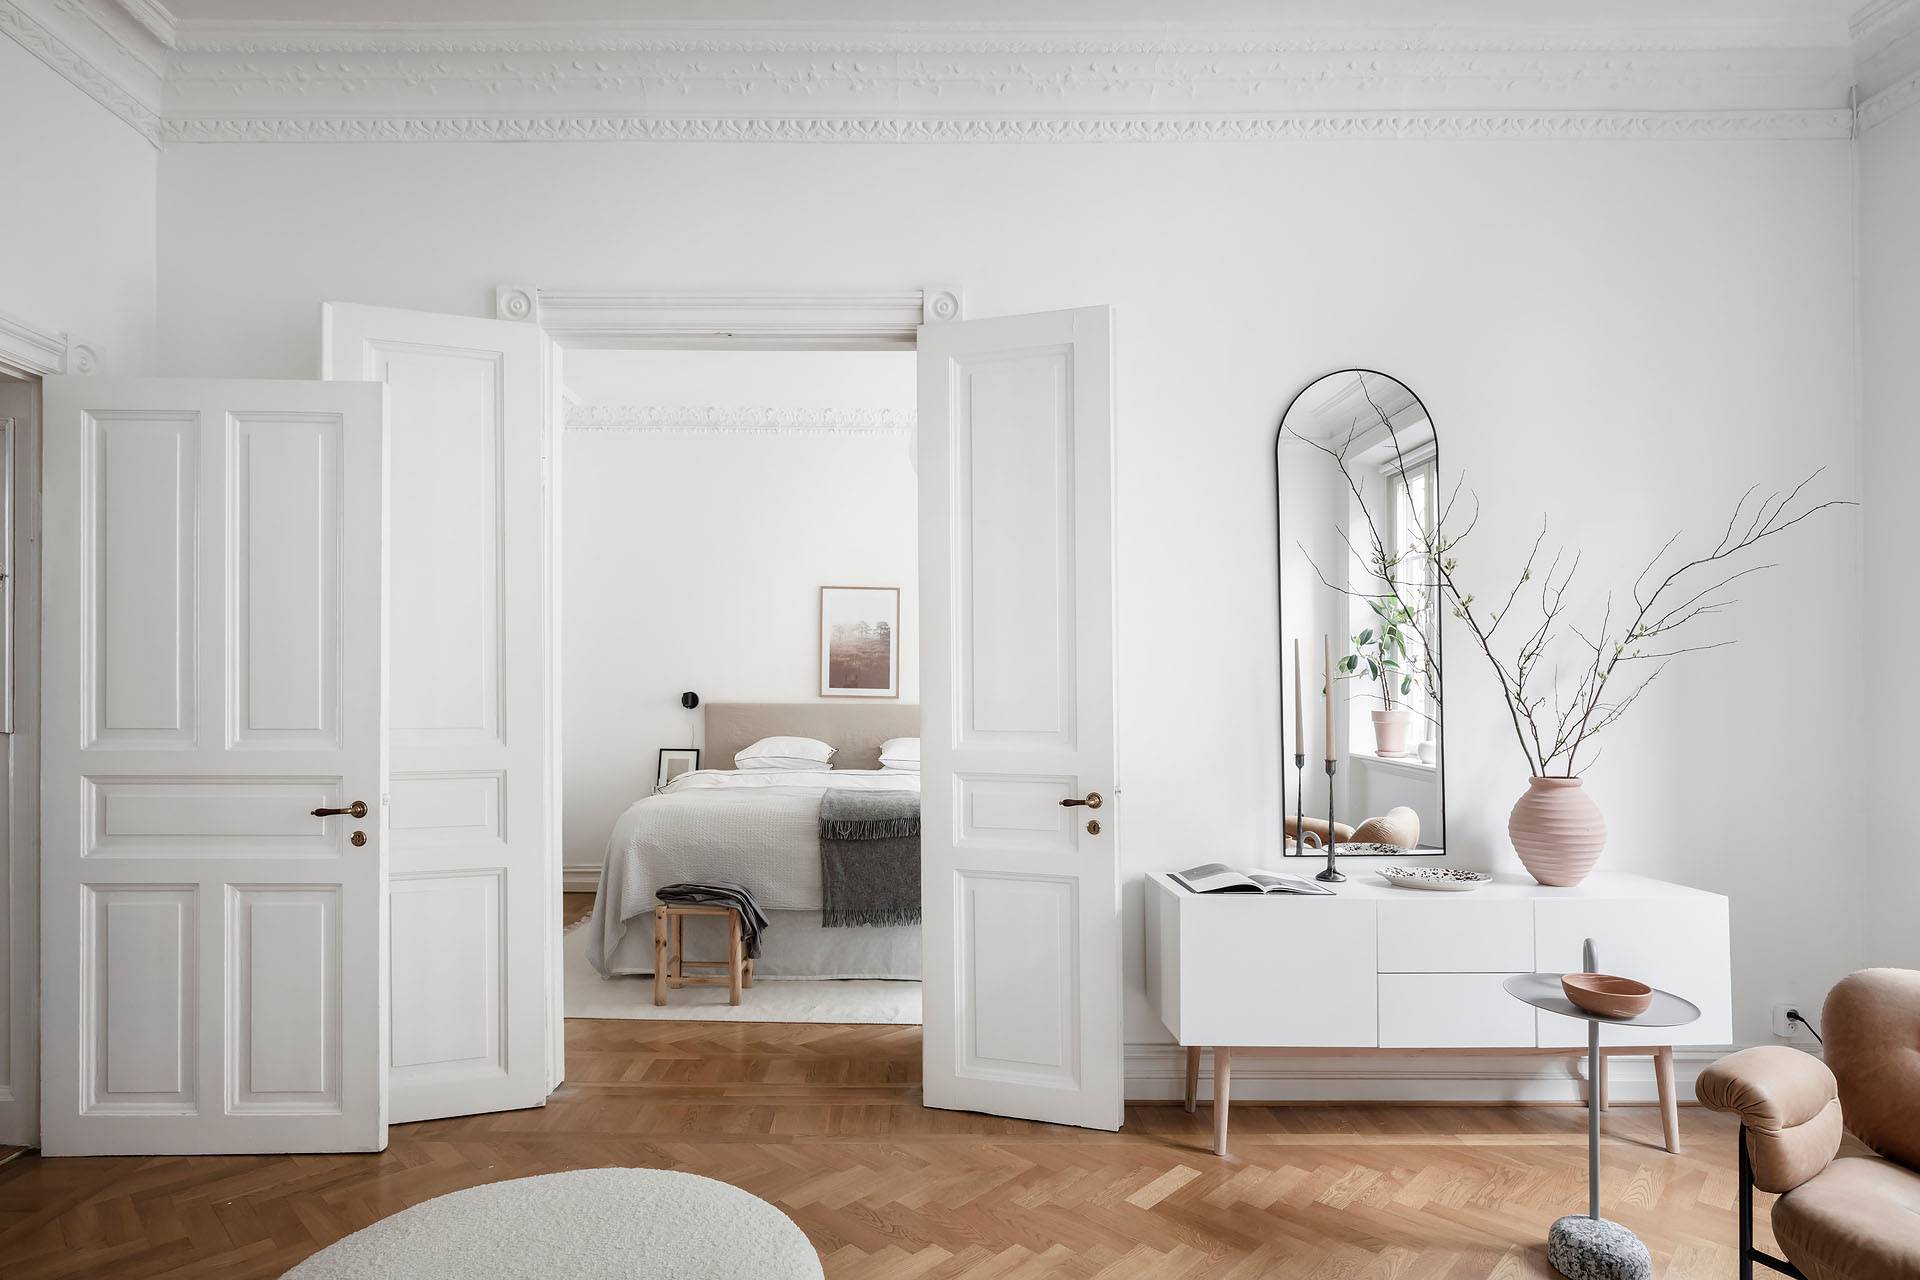 Salón nórdico decorado en color blanco con acceso al dormitorio, foto de Alvhem